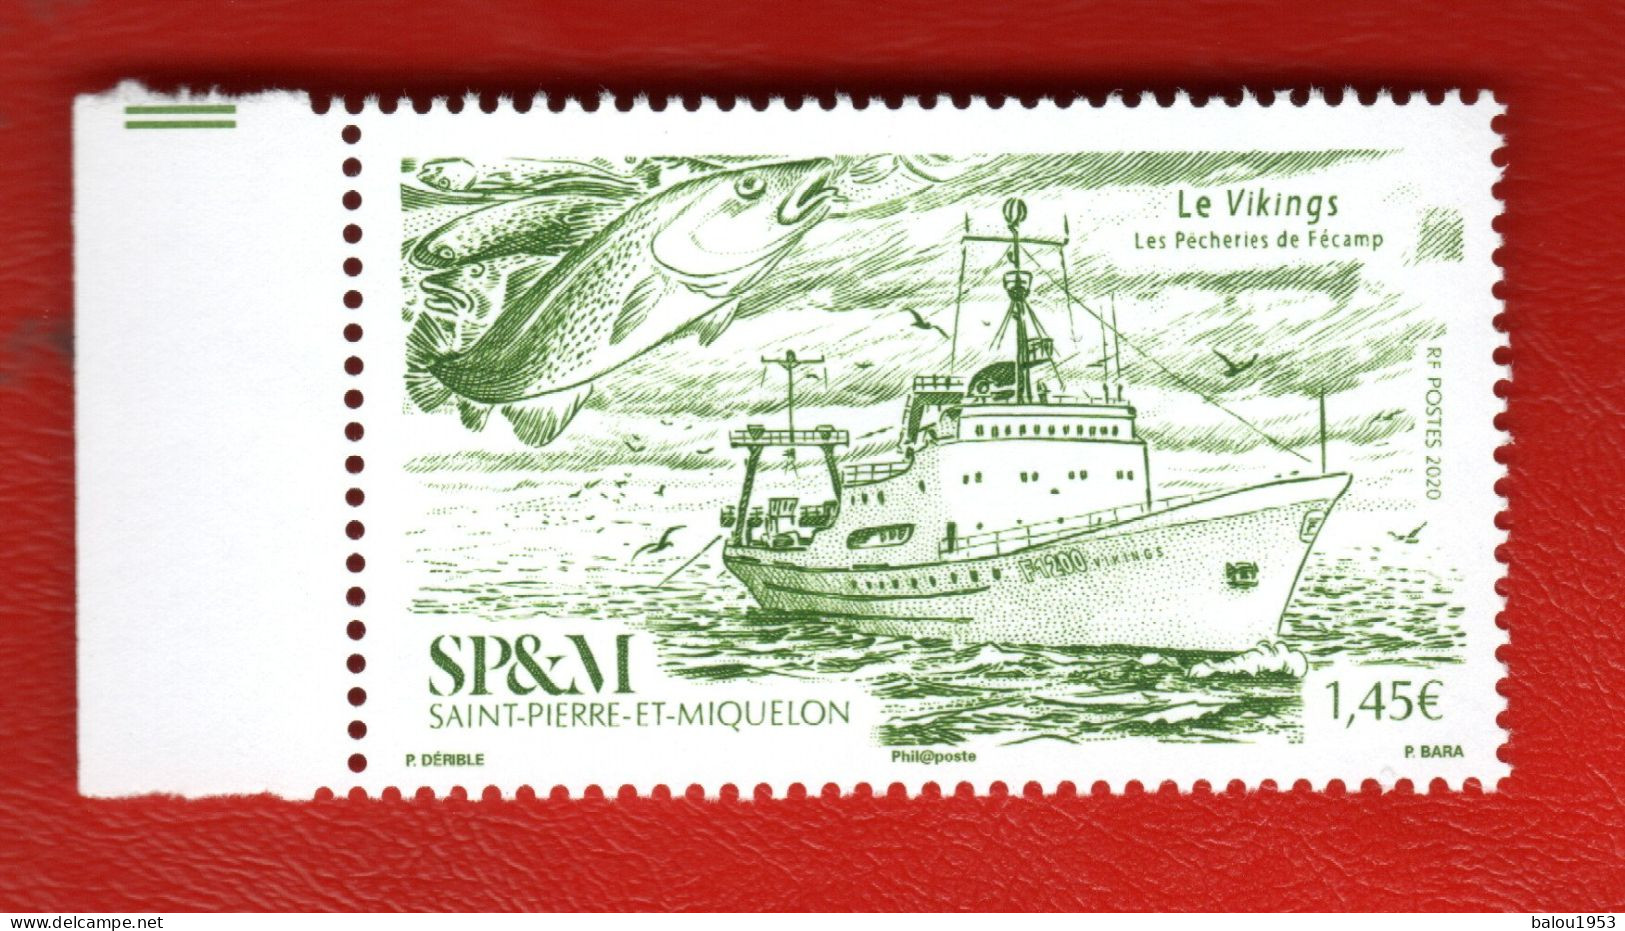 Saint-Pierre-et-Miquelon. Poste 2020. N° 1234. Neuf. Vendu à La Facial. - Unused Stamps